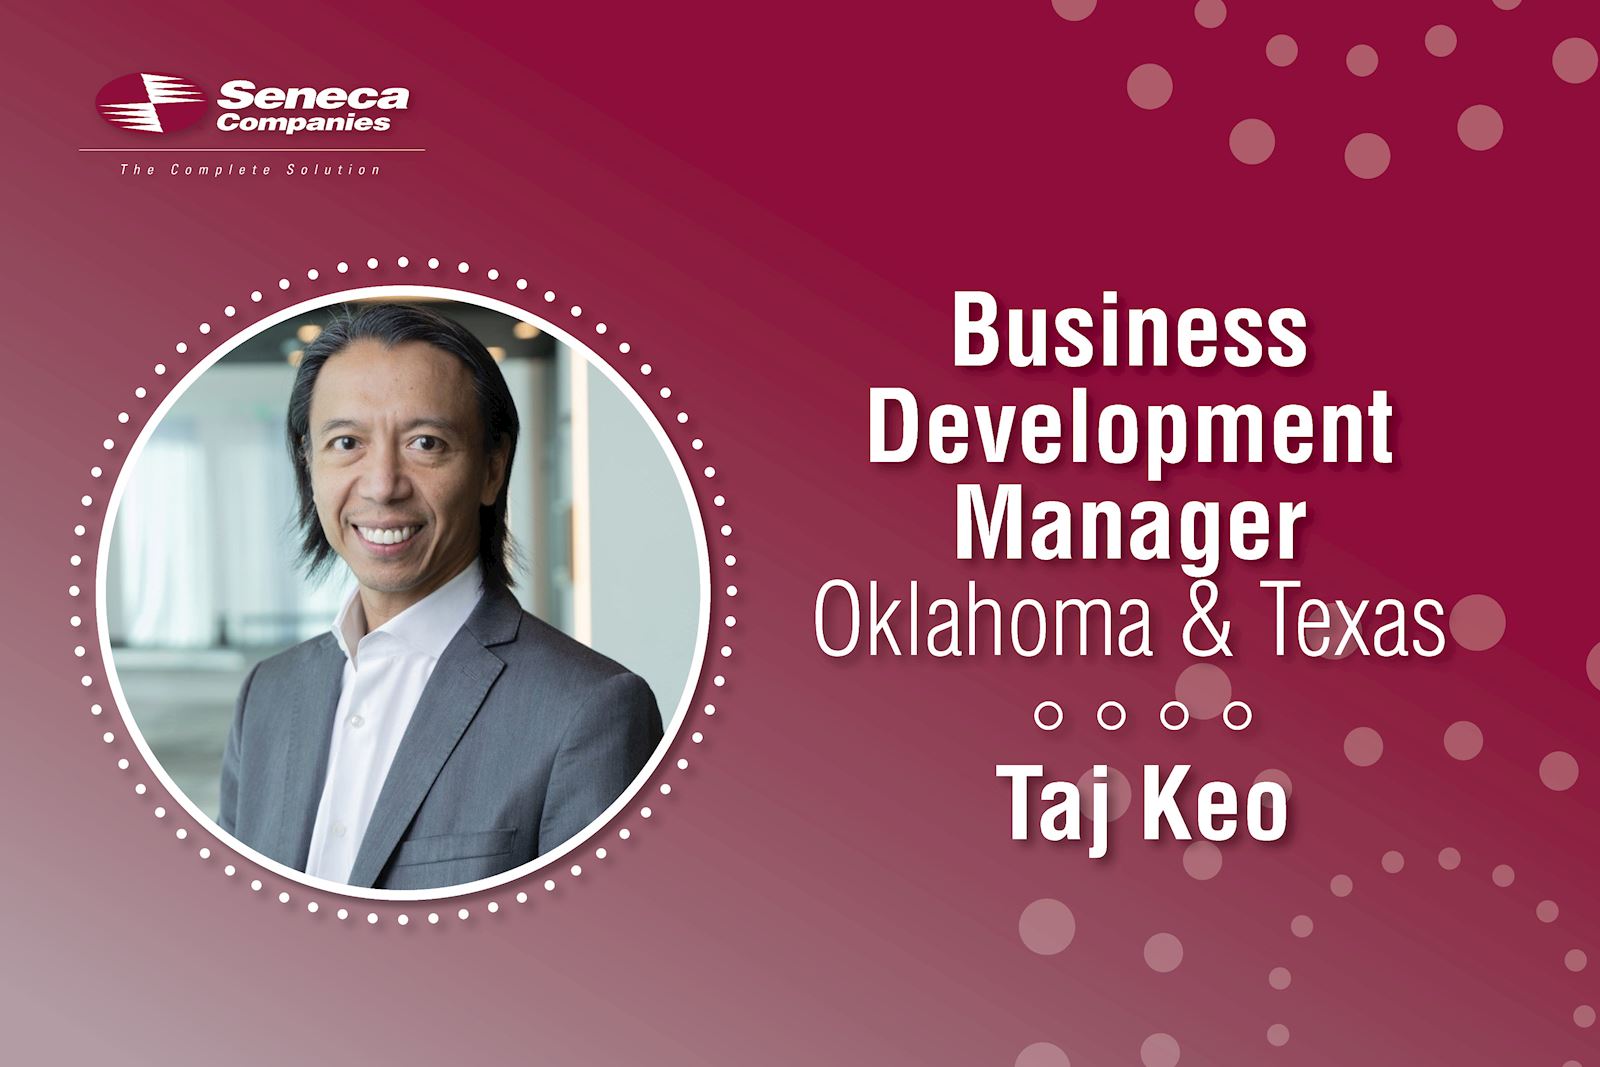 Seneca Companies names new Business Development Manager - Oklahoma & Texas